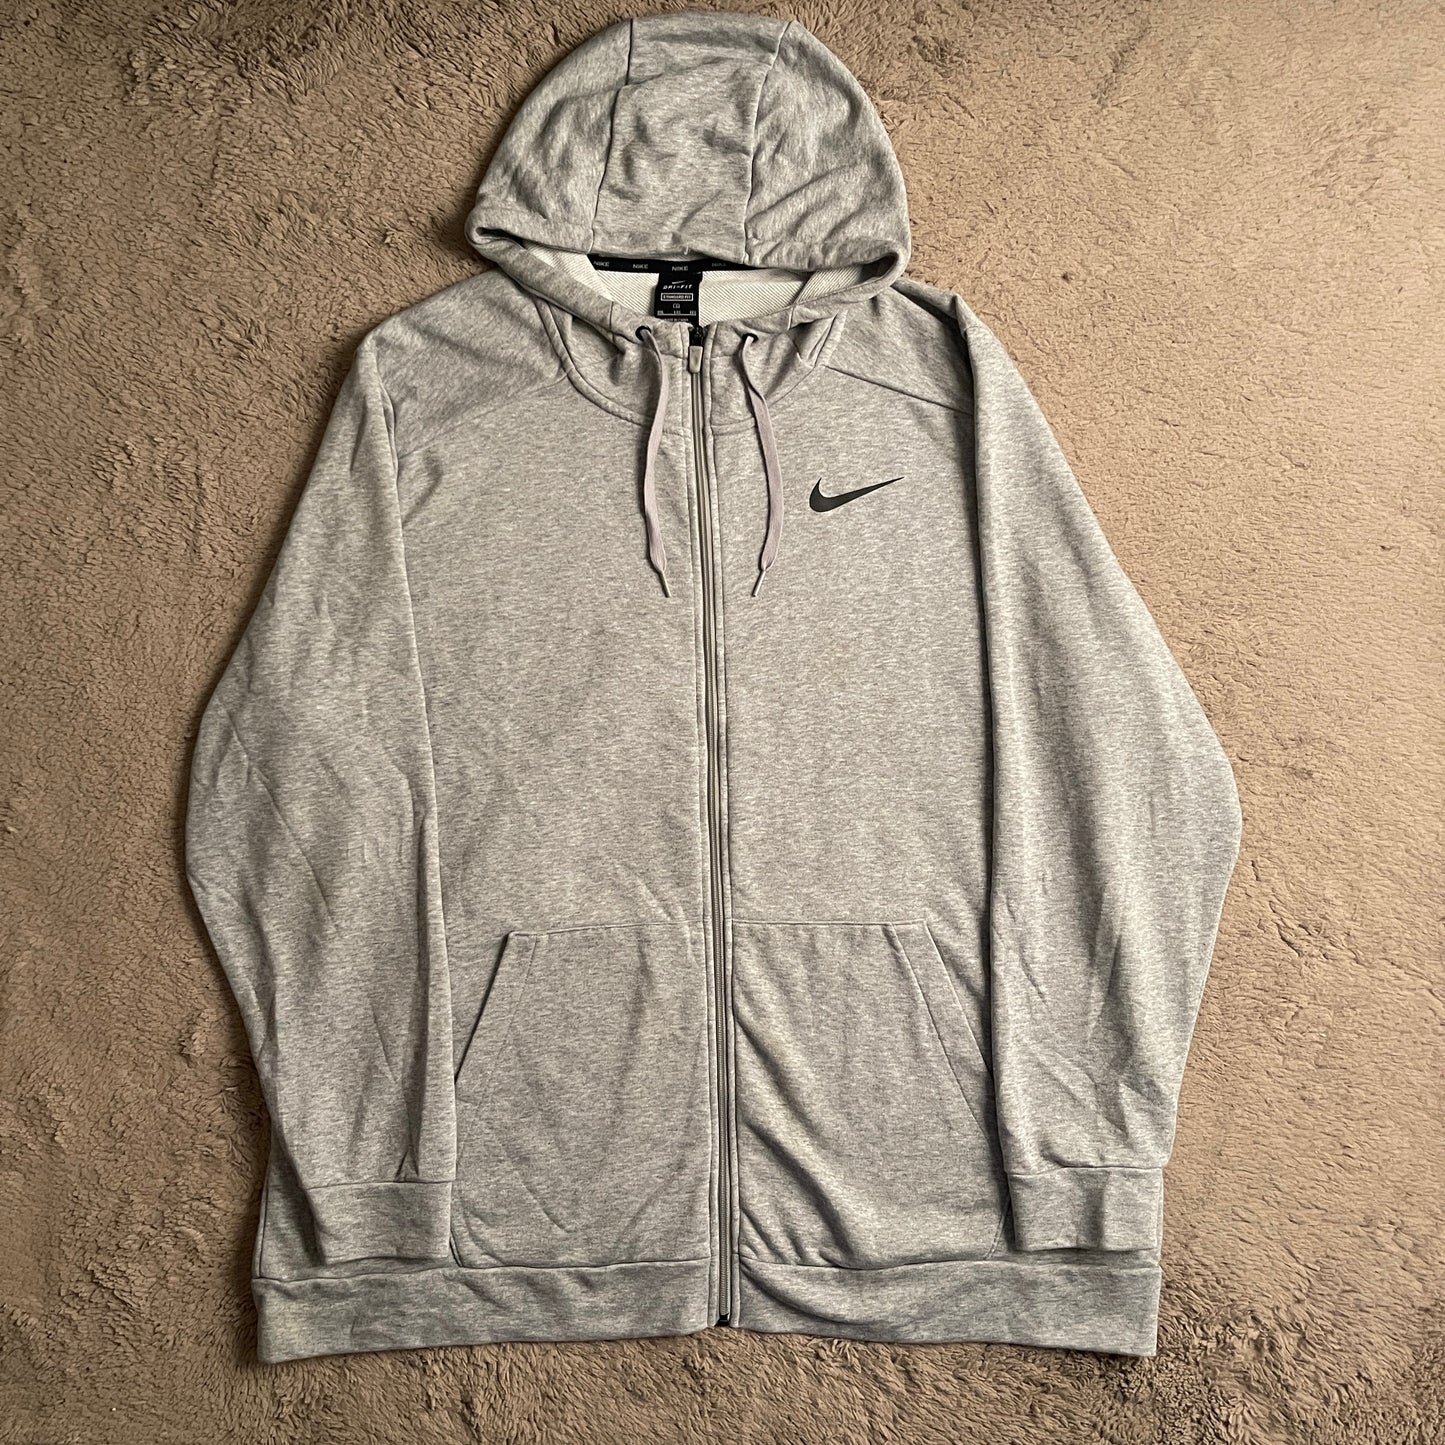 Nike Dri-FIT Full Zip Hoodie Jacket (2XL)